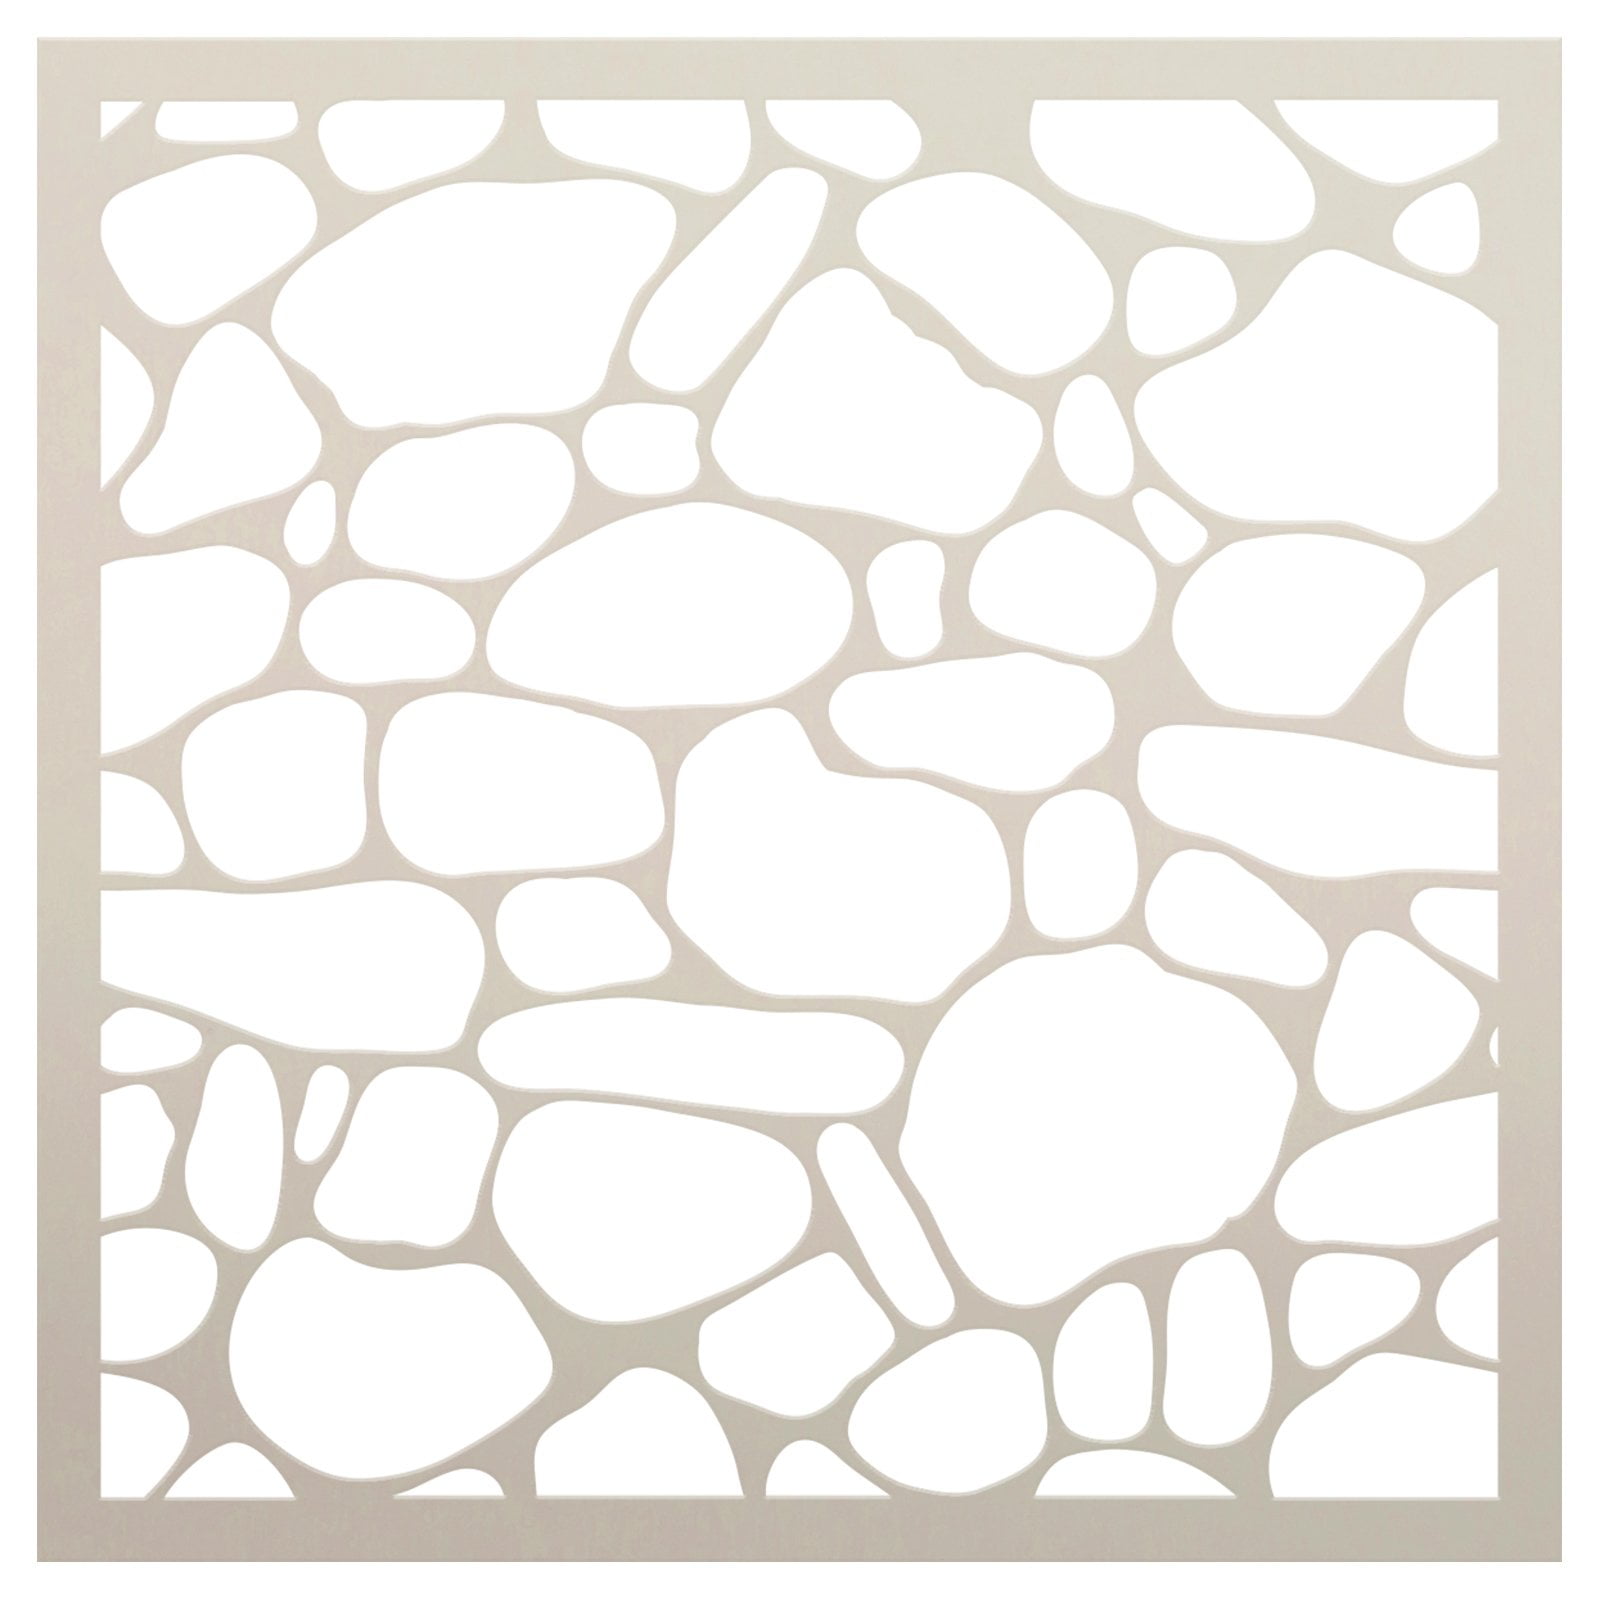 Rough Bricks - Pattern Stencil- Select Size - STCL703 - by StudioR12